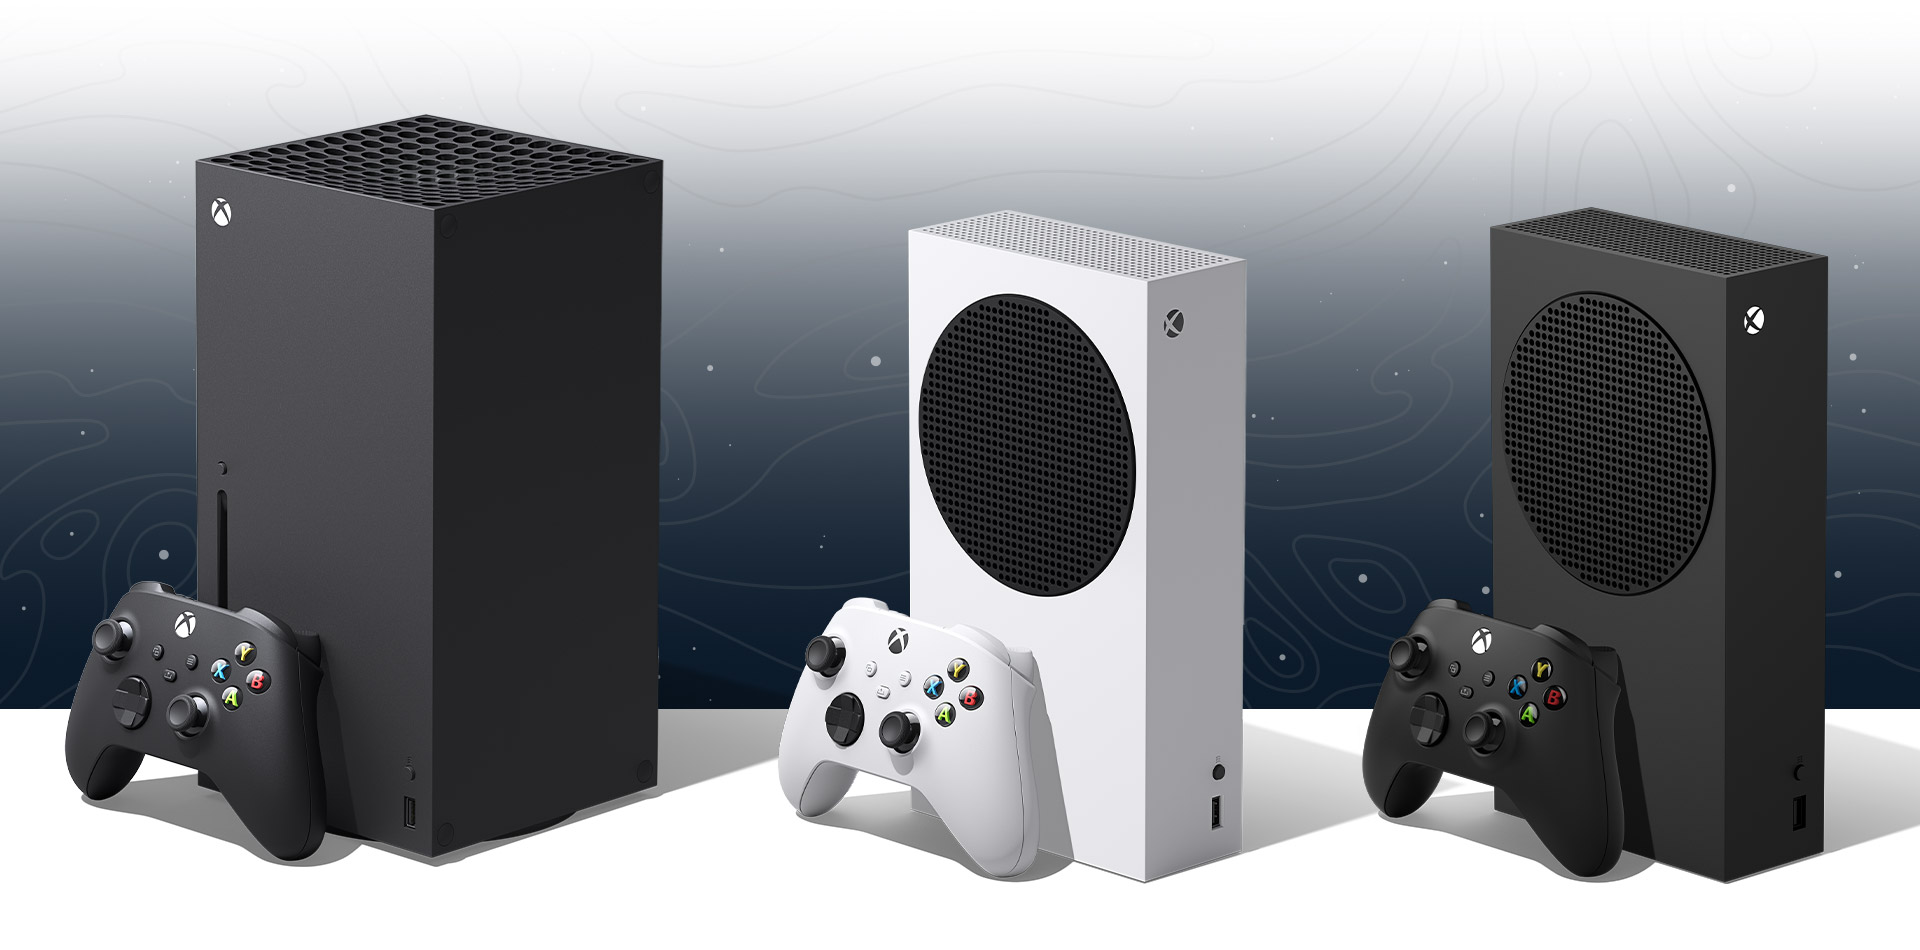 Capture d’écran des Xbox Series X, Xbox Series S et Xbox Series S - 1 To avec les manettes noires et blanches correspondantes.